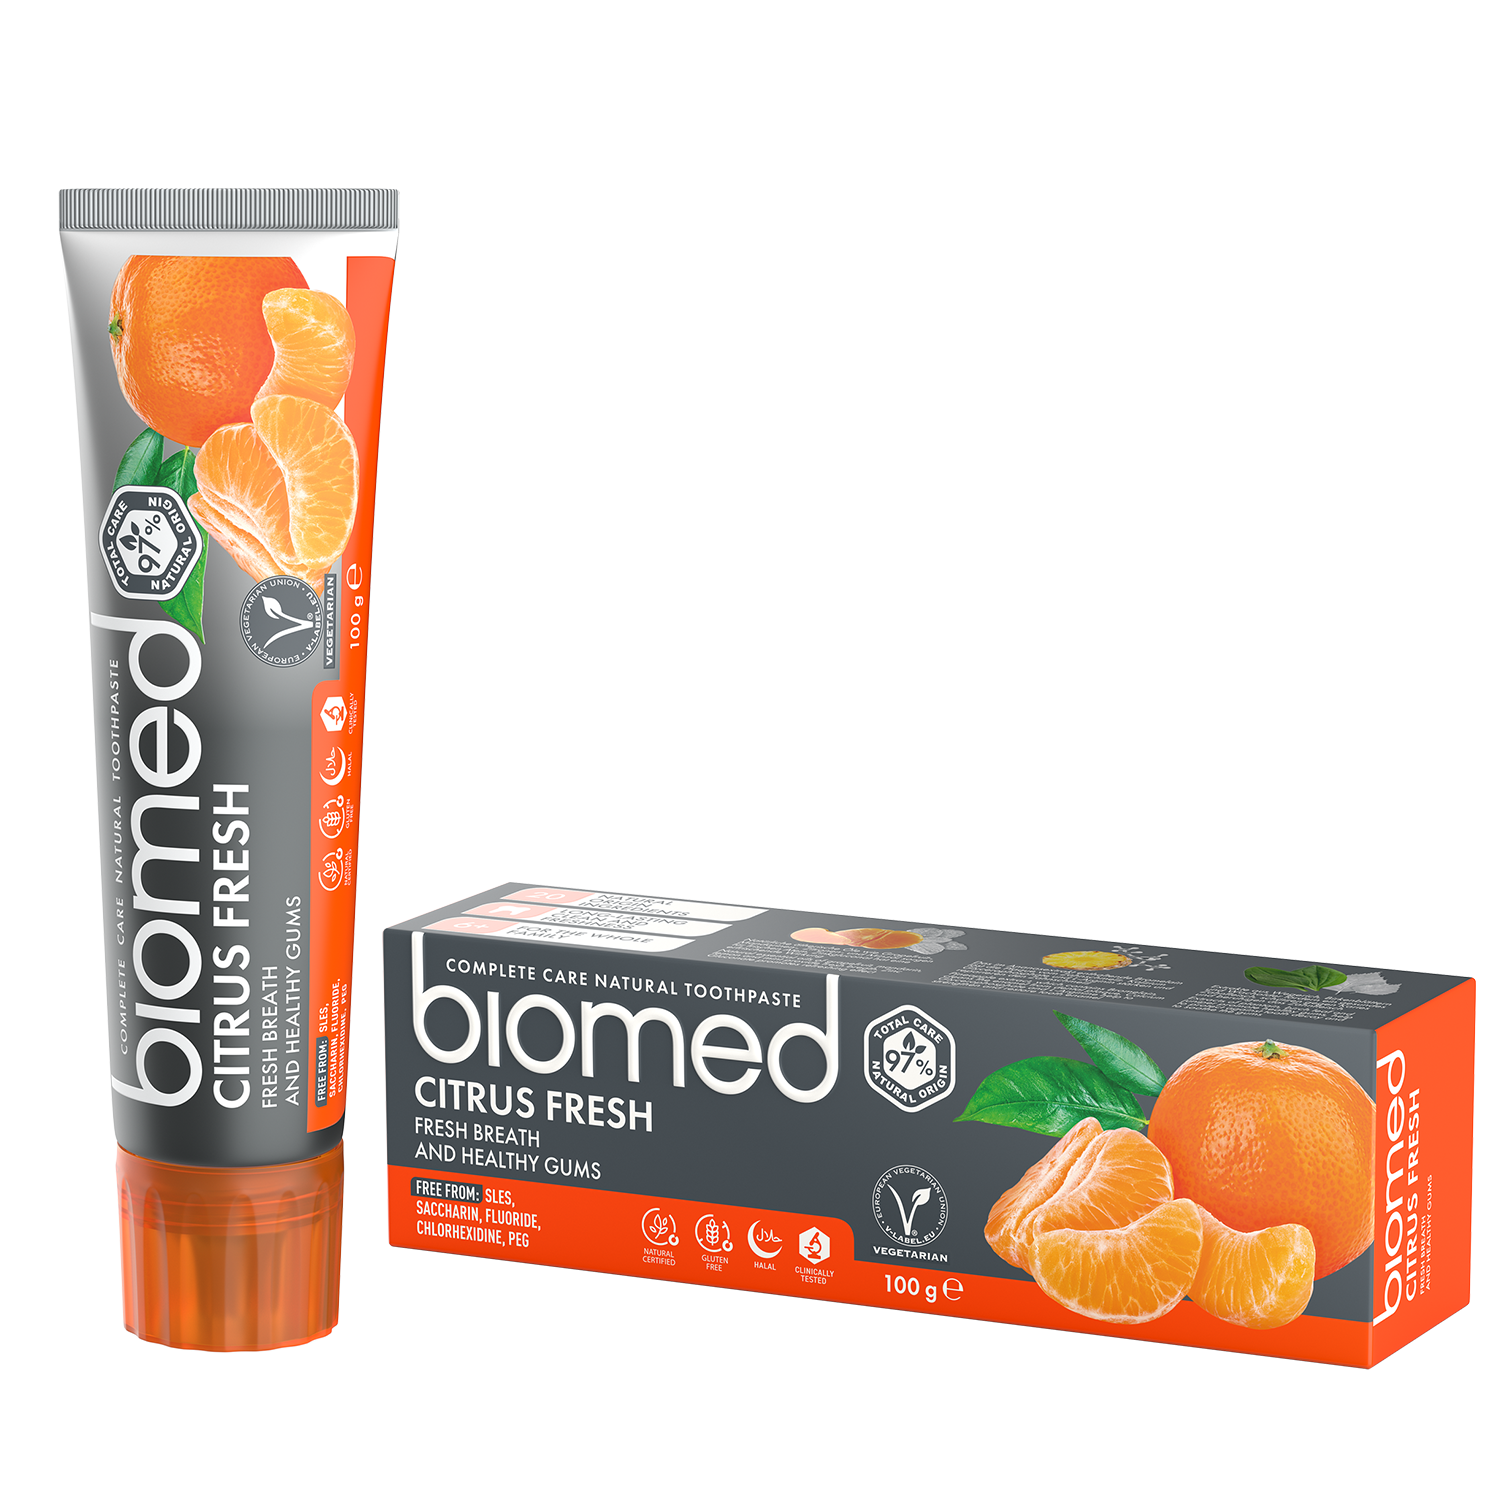 biomed Citrus Fresh Zahnpasta